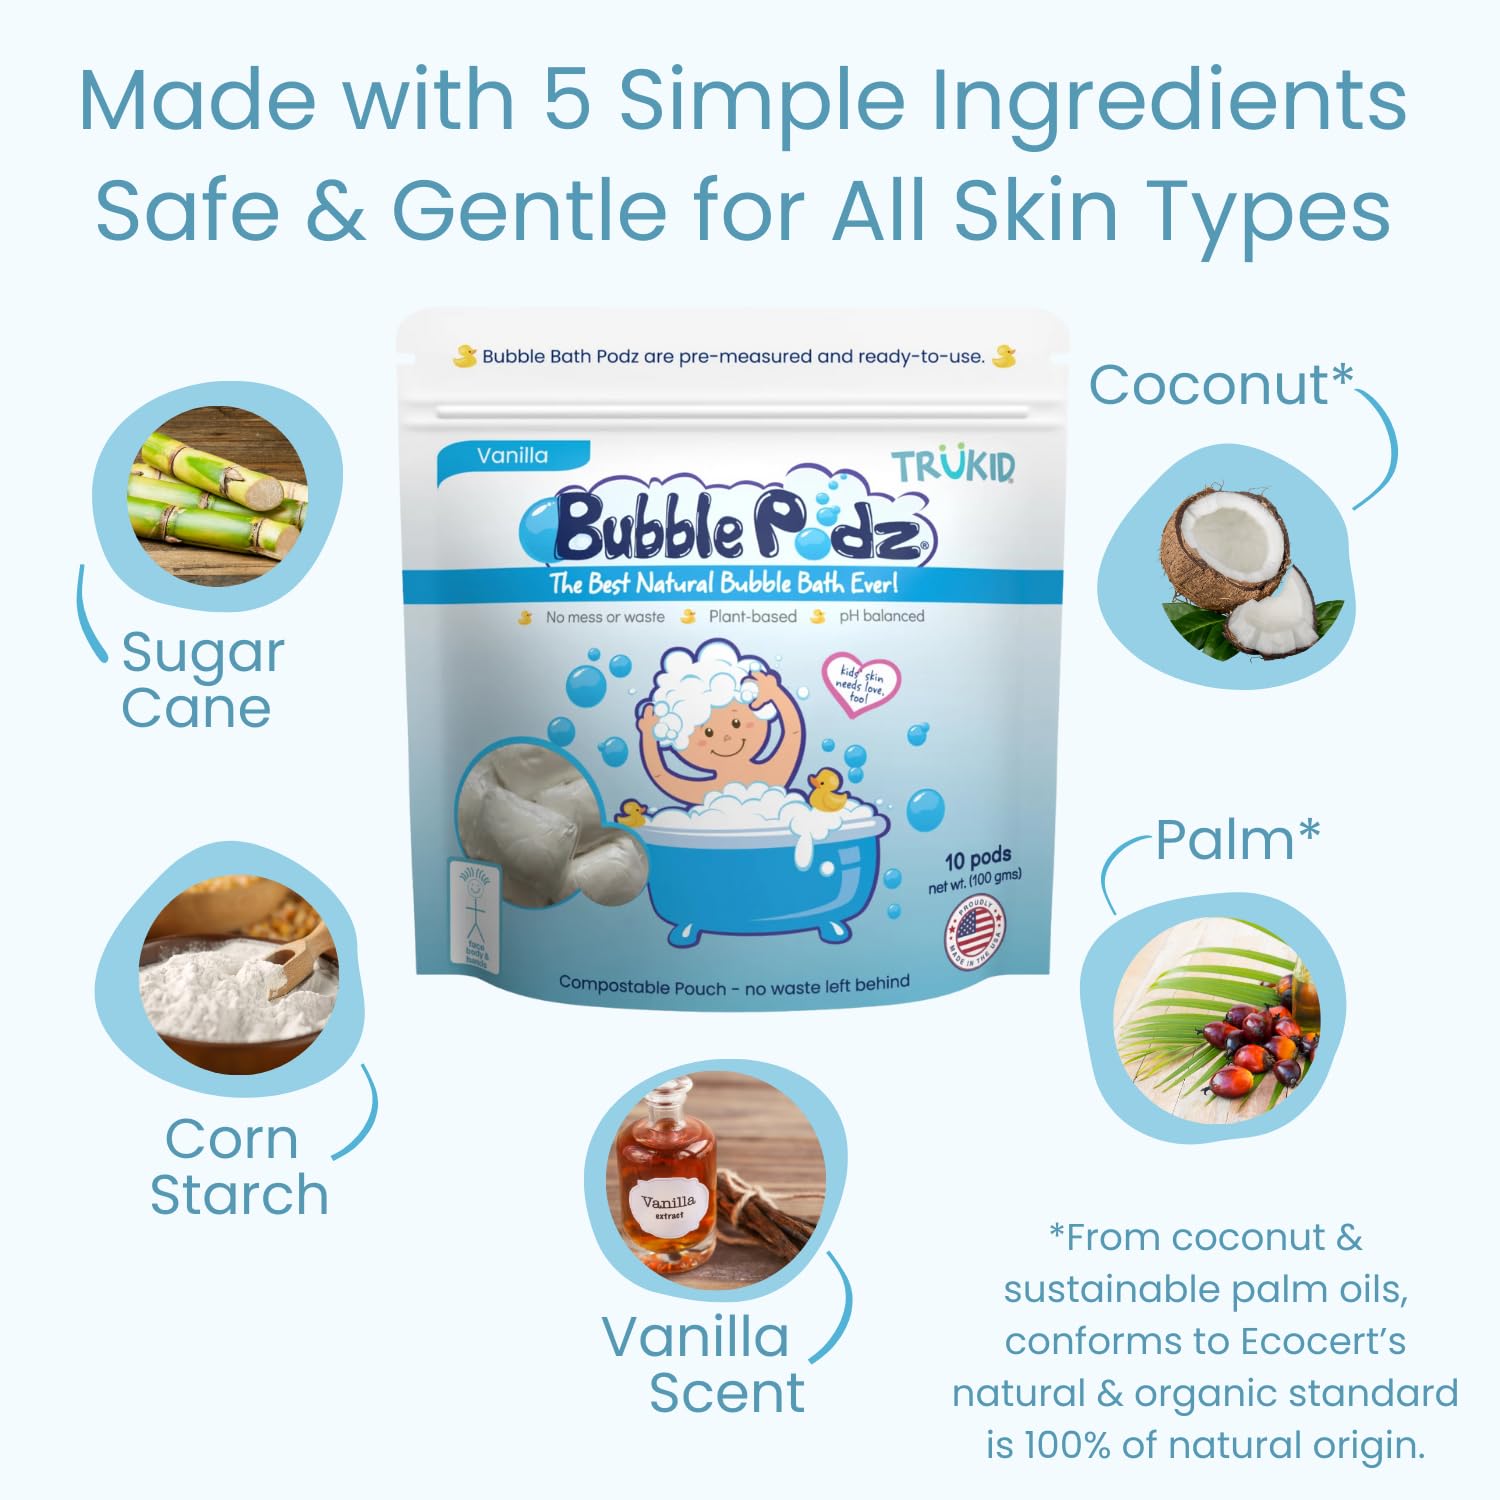 TruKid Bubble Podz & BubbleGlove Bundle - Includes 2-Set Bath Wash Gloves for Parent & Child, Bubble Bath Pods Vanilla 10ct, Baby Bath Essentials, Gentle for Sensitive Skin of Kids, Toddlers